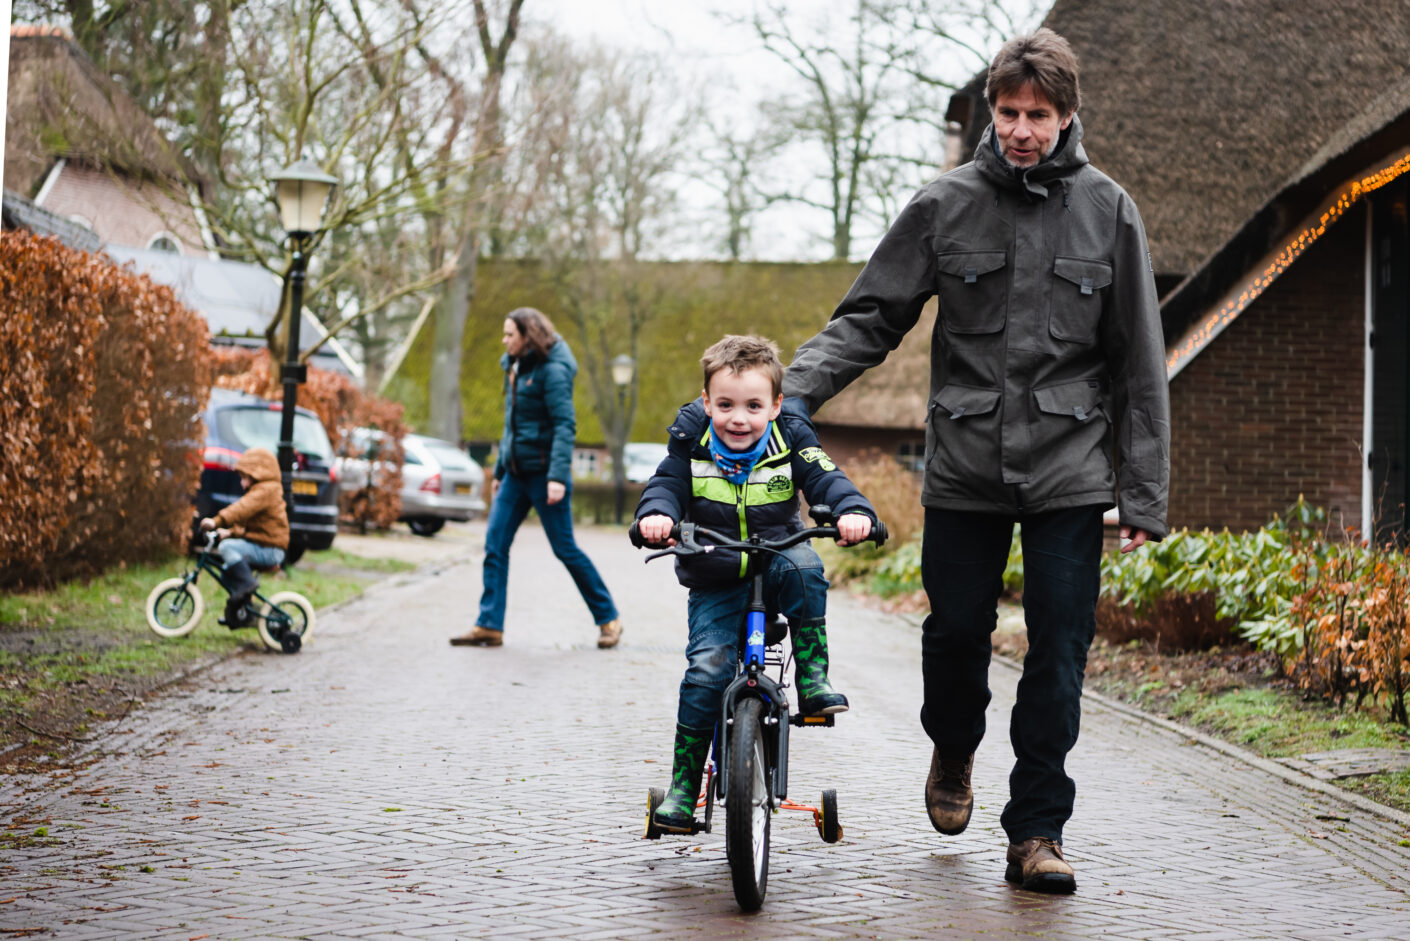 Jantina Fotografie Assen, Drenthe, Jantina Mulder, familiefotograaf Drenthe, Familie fotograaf Friesland, Familie fotograaf Groningen, fietsen met zijwieltjes, fietste in het dorp, leren fietsen